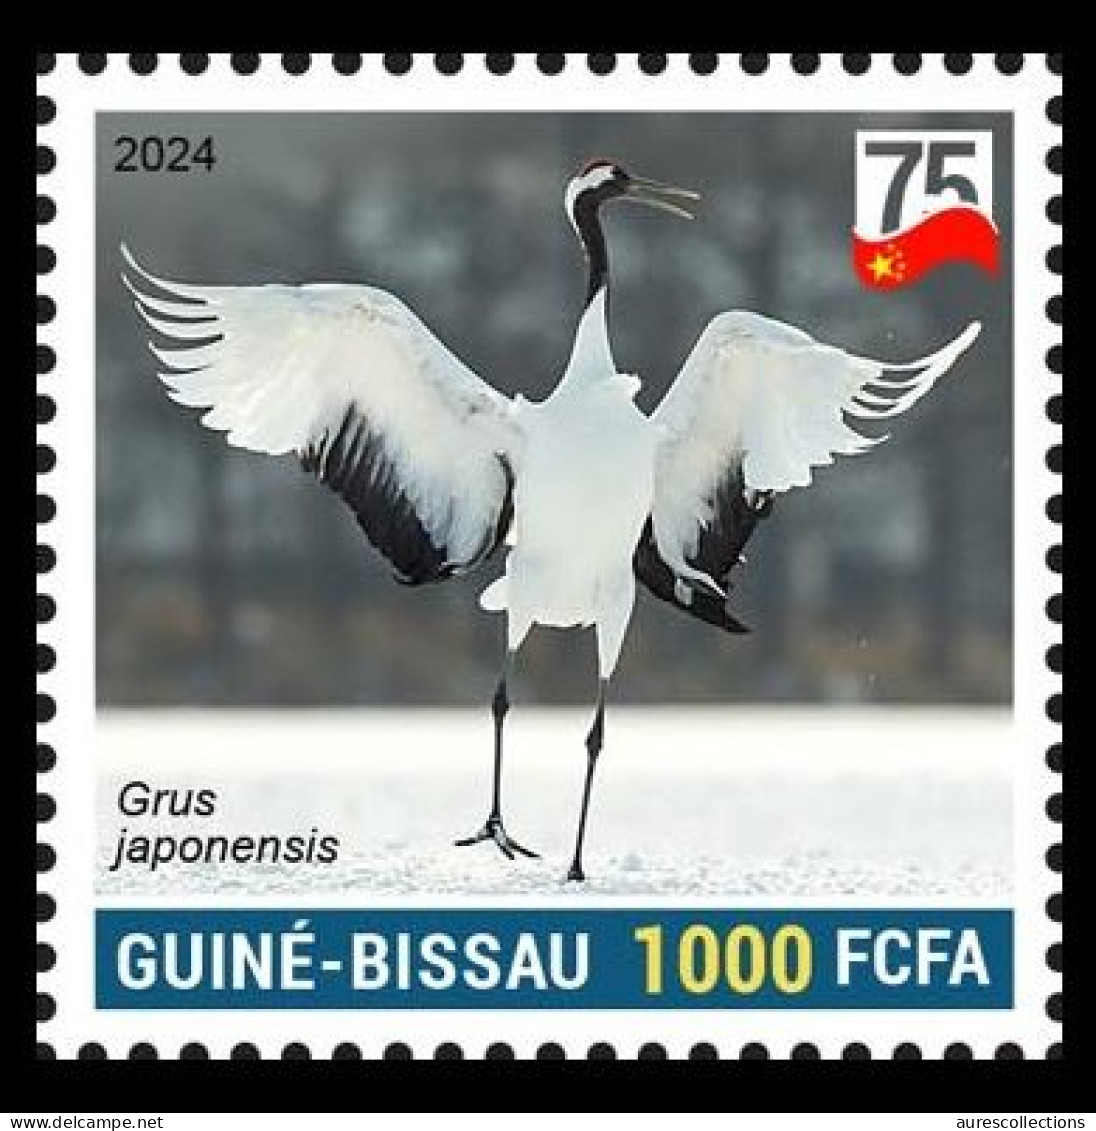 GUINEA BISSAU 2024 STAMP 1V - CHINA BIRDS - RED CROWNED CRANE GRUE DU JAPAN - 75 ANNIV. OF CHINA - MNH - Aves Gruiformes (Grullas)